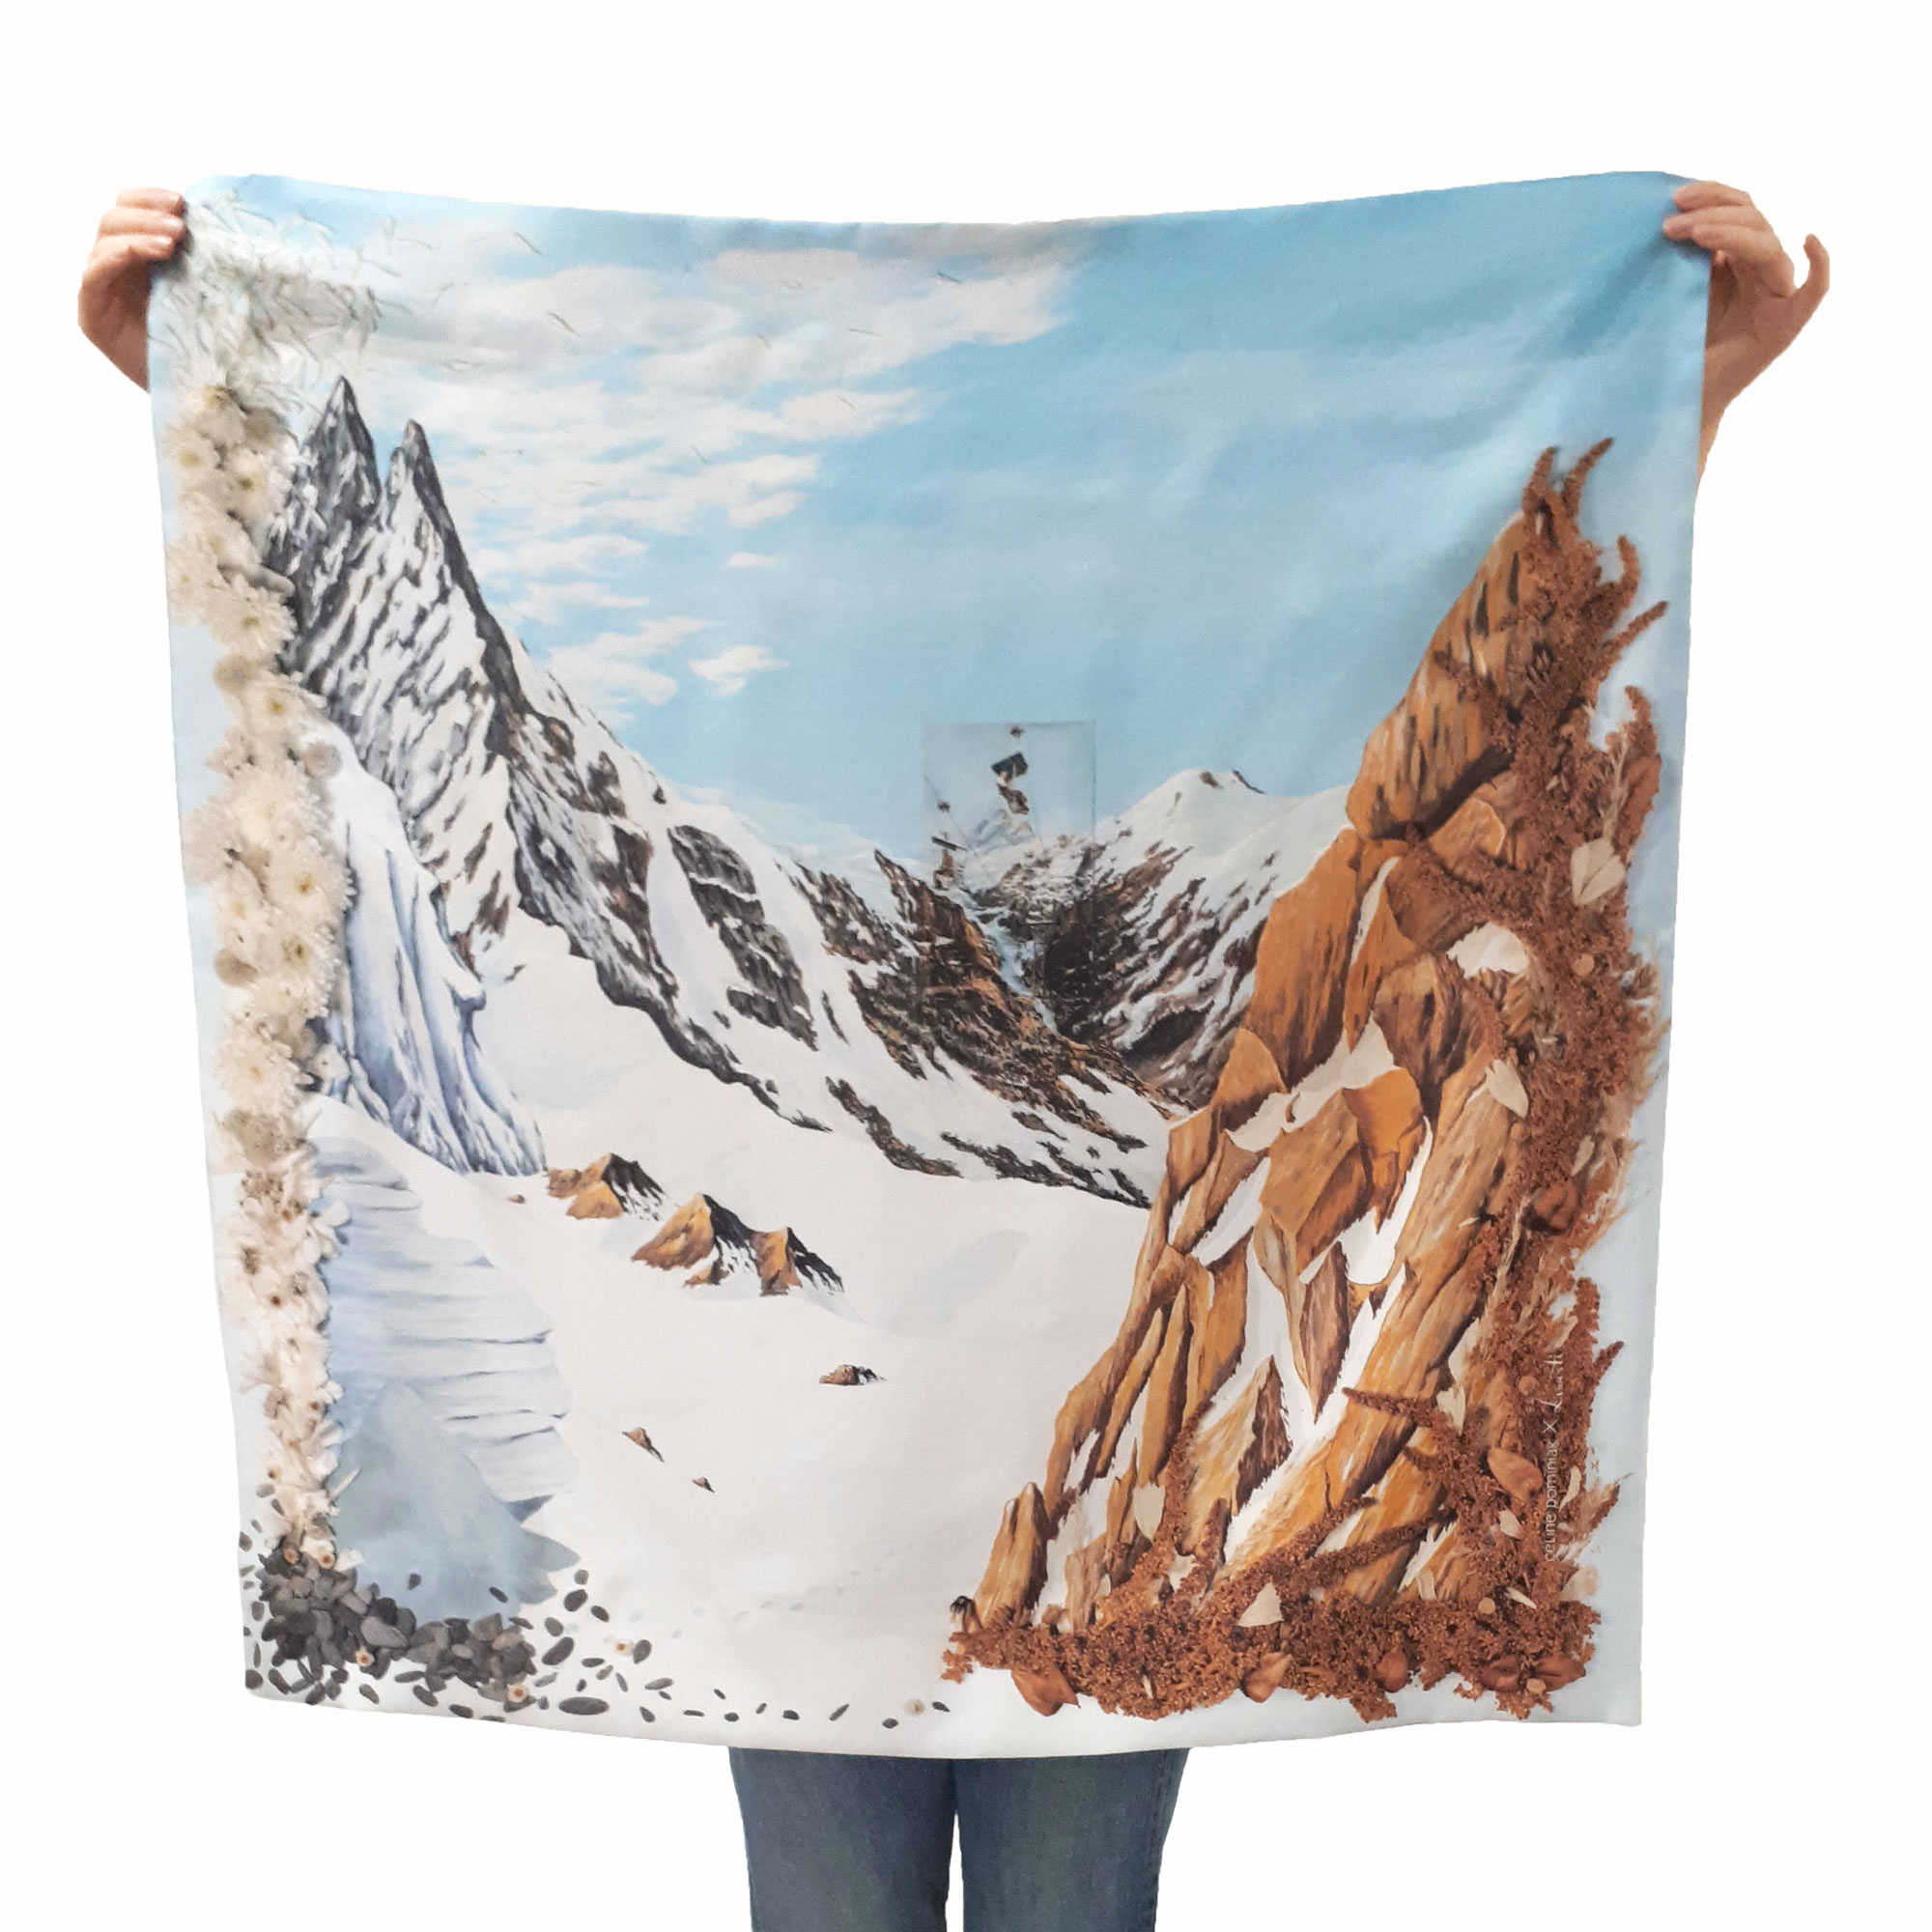 Foulard carré en soie de Céline Dominiak , paysage de montagnes et de sommets enneigés, vu en entier